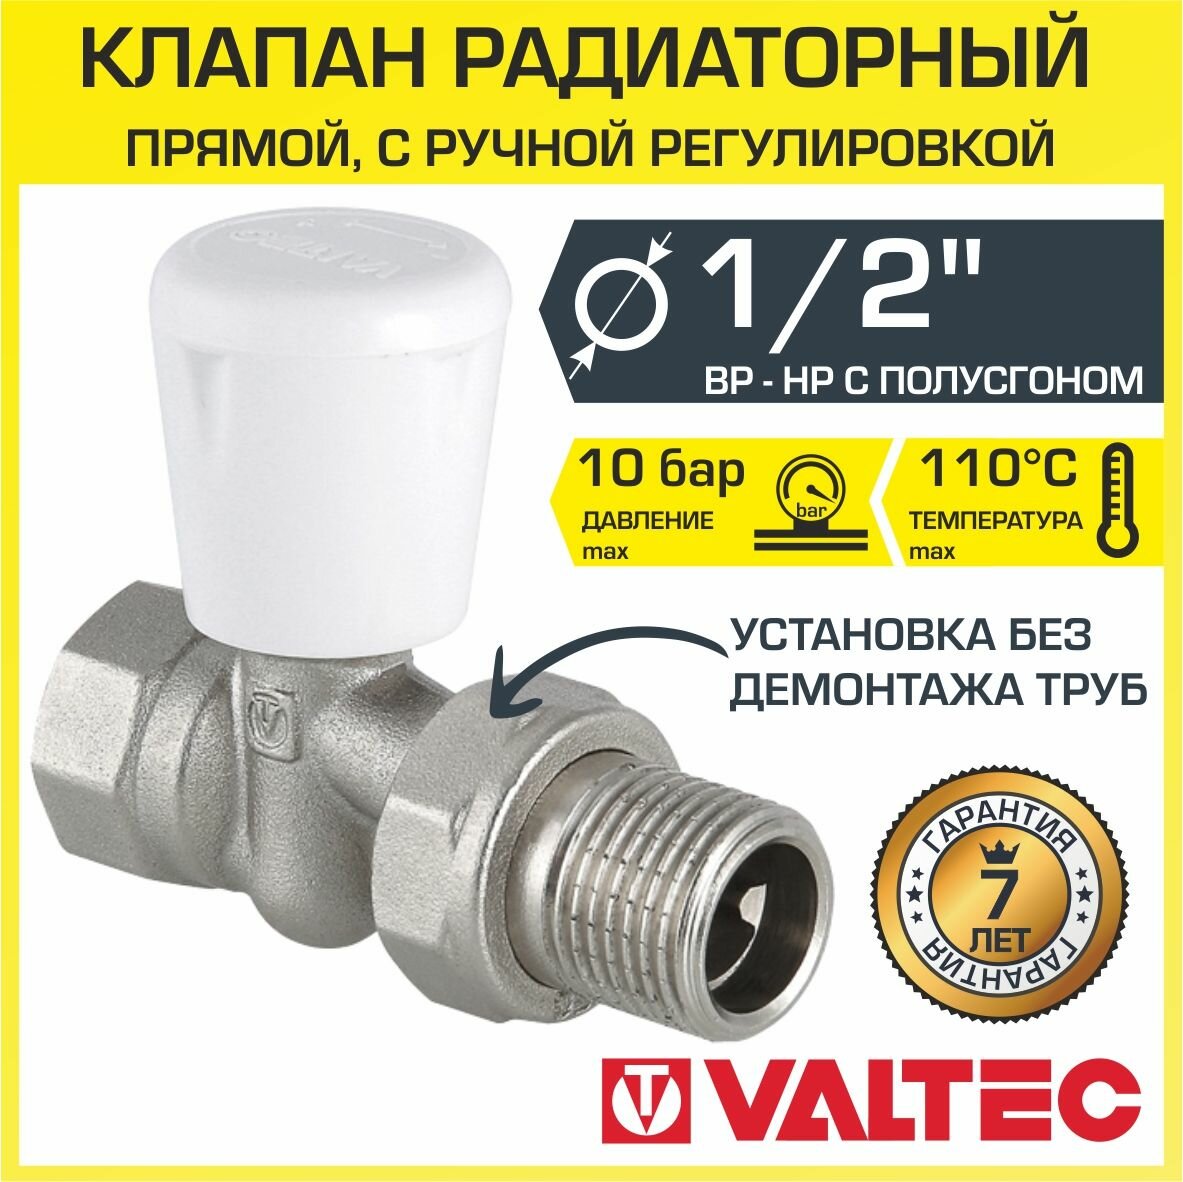 Клапан ручной для рад. прямой 1/2" Valtec VT.018.N.04 - фото №2